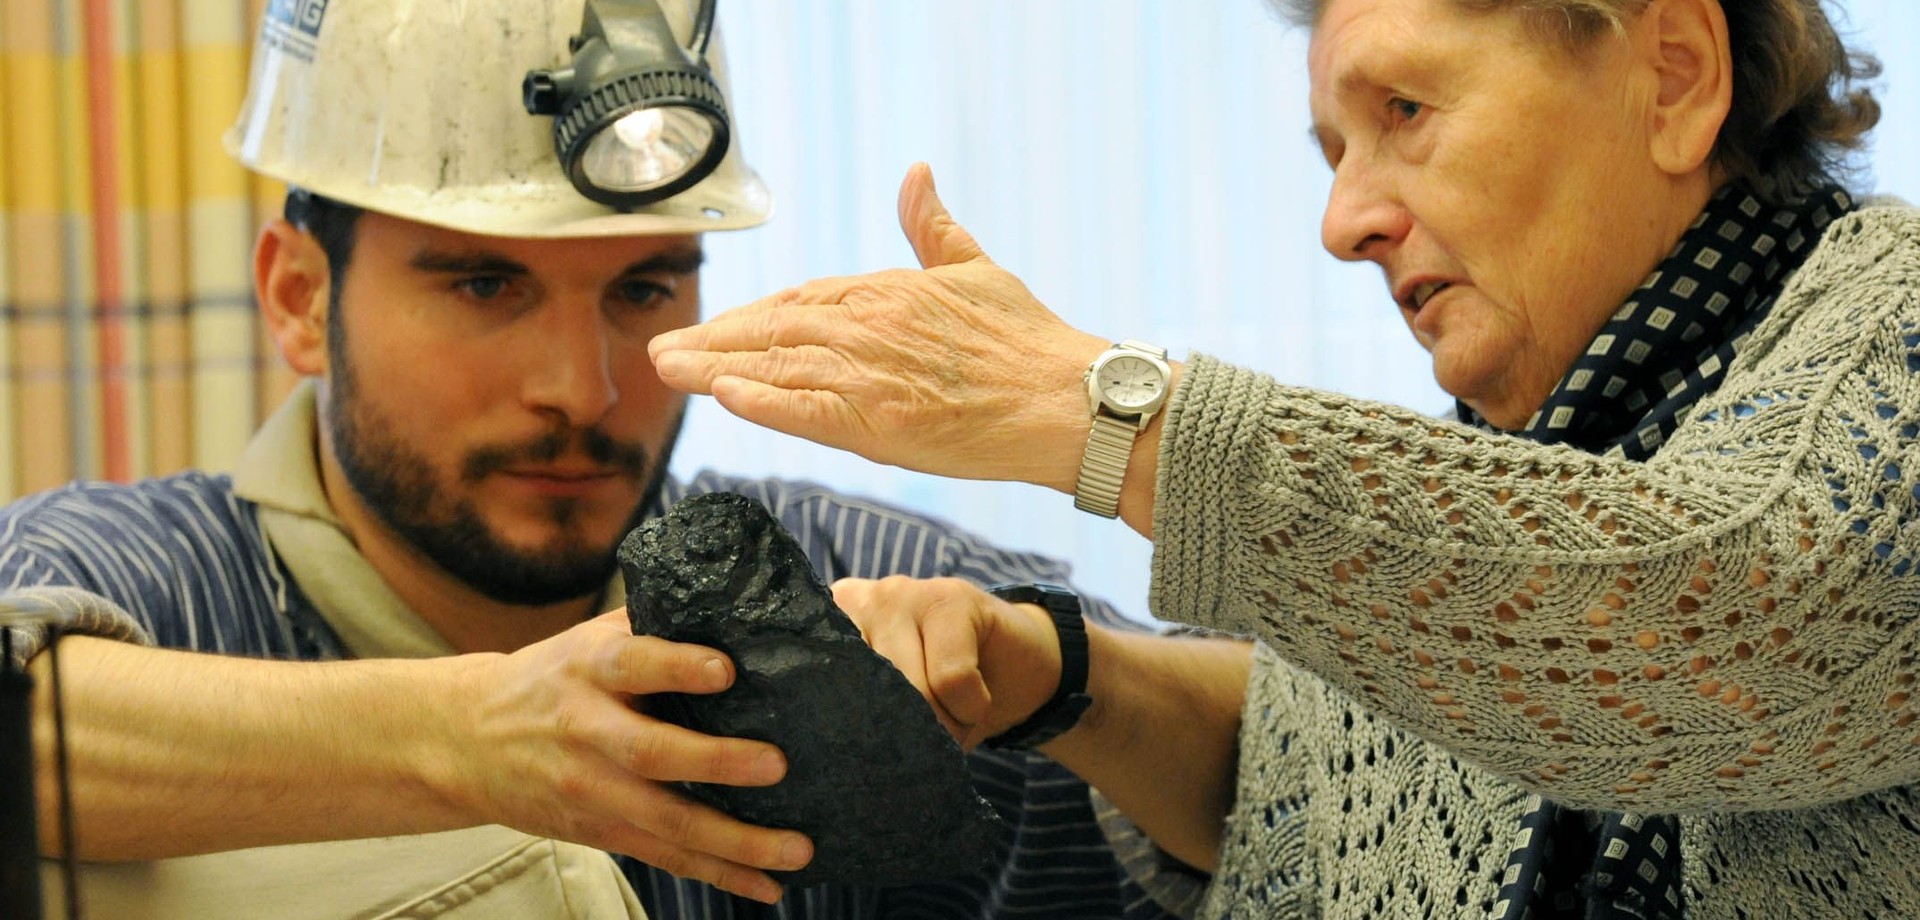 Eine grauhaarige Frau betastet ein Stück Kohle. Ein Museumsführer, verkleidet als Bergarbeiter, hält die Kohle in der Hand.